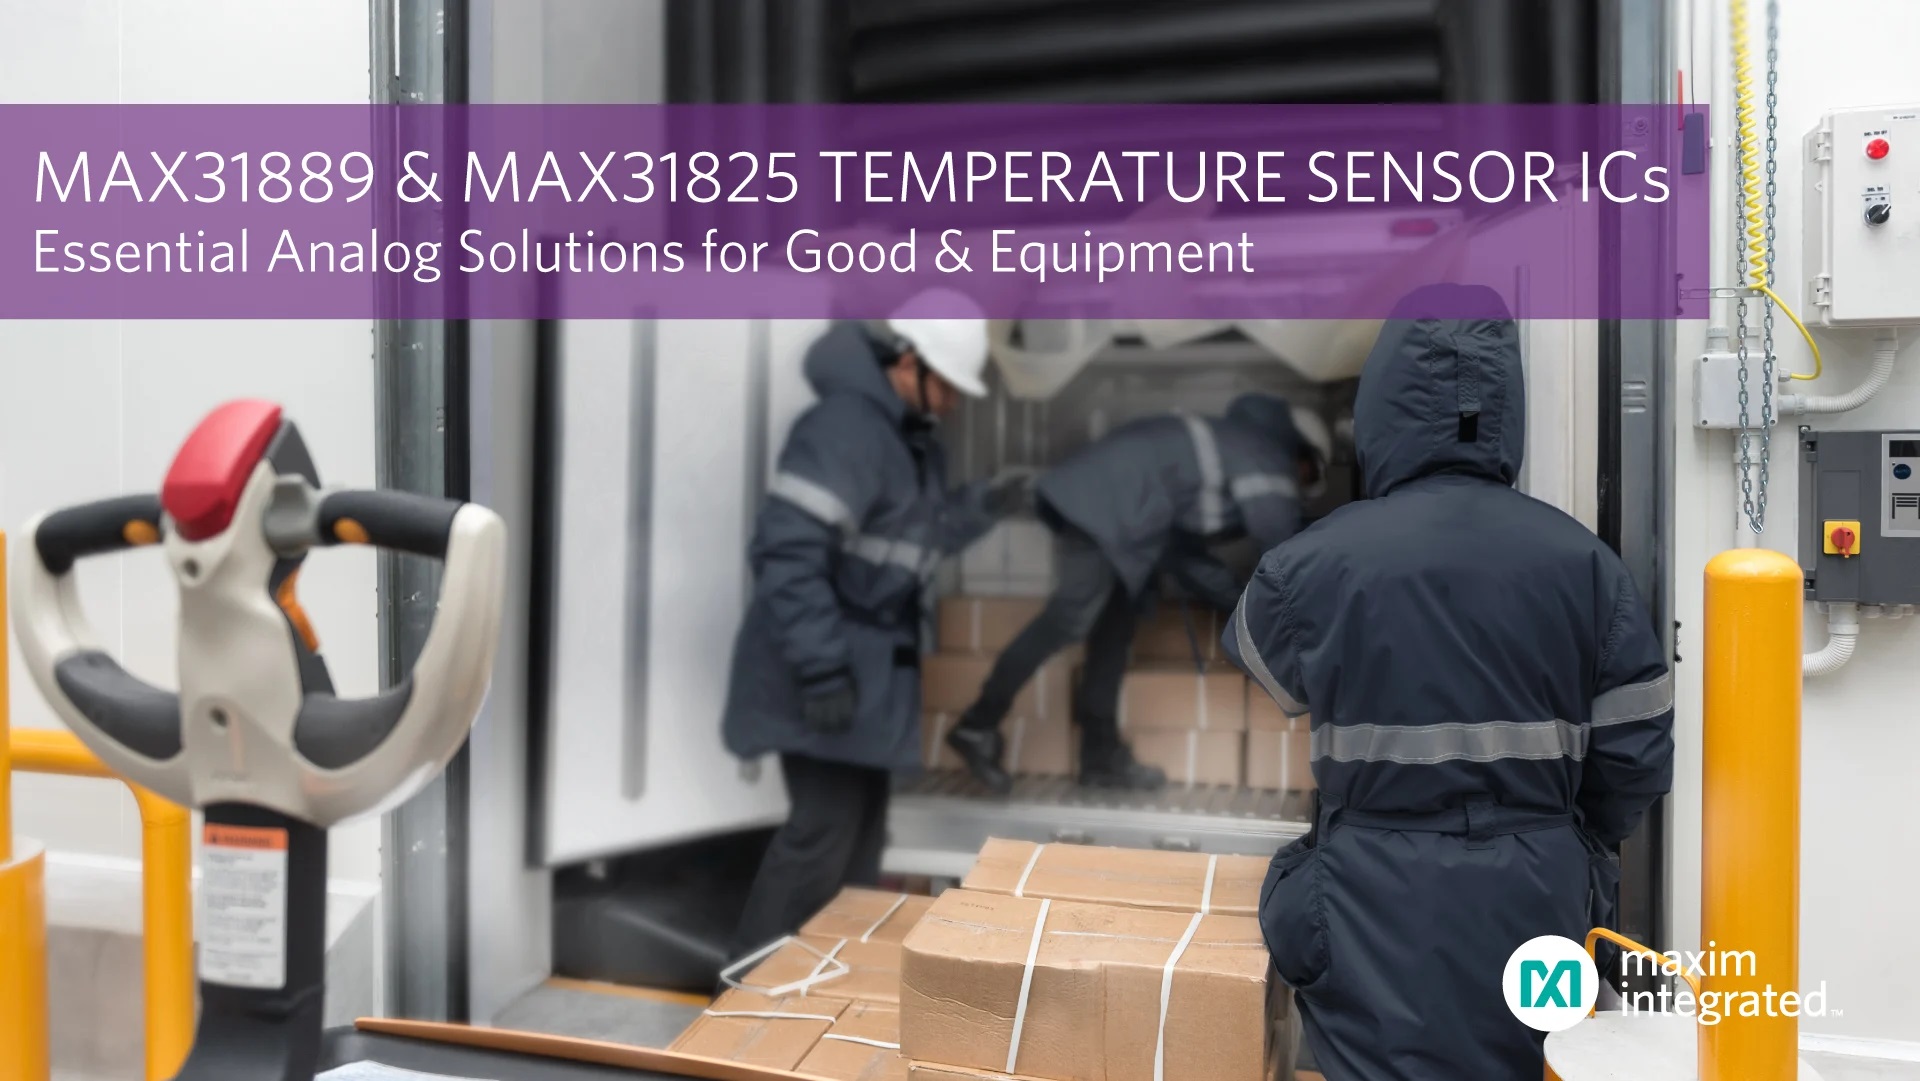 Analog Temperature Sensor ICs Deliver Precision Measurement